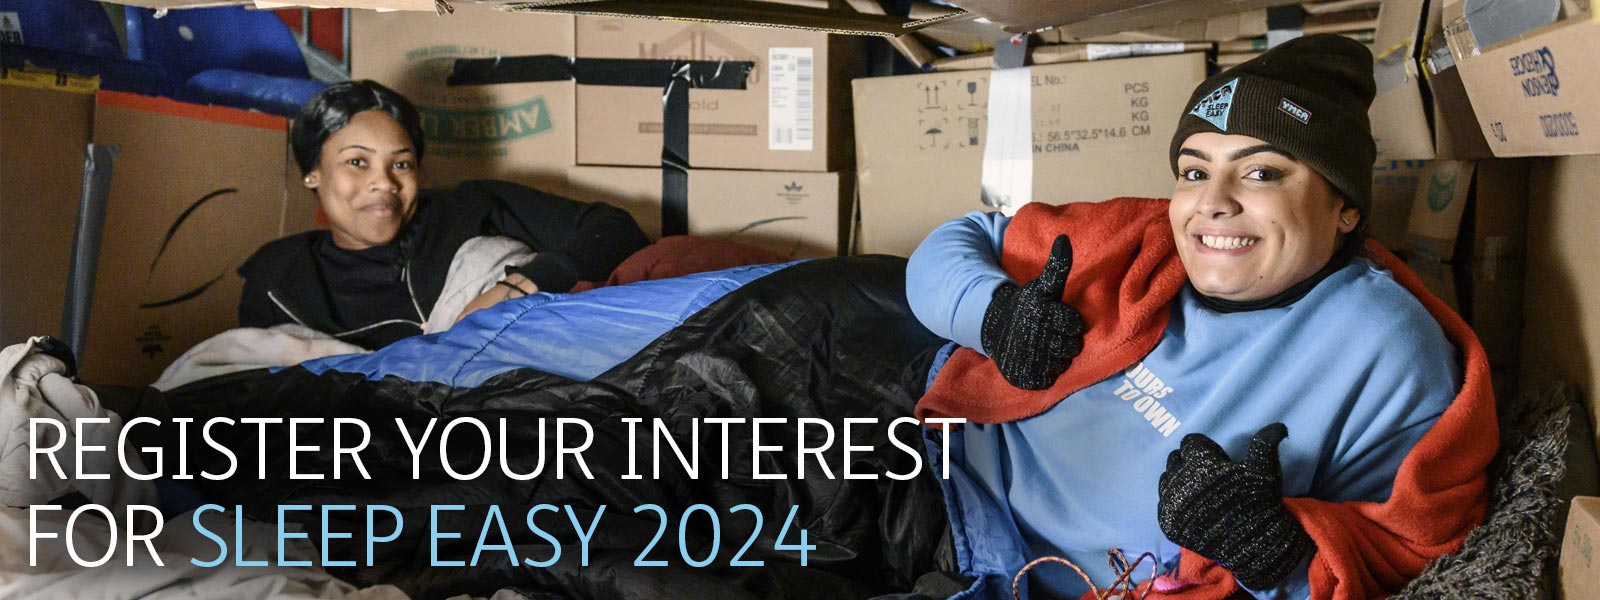 Register Your Interest For Sleep Easy 2024